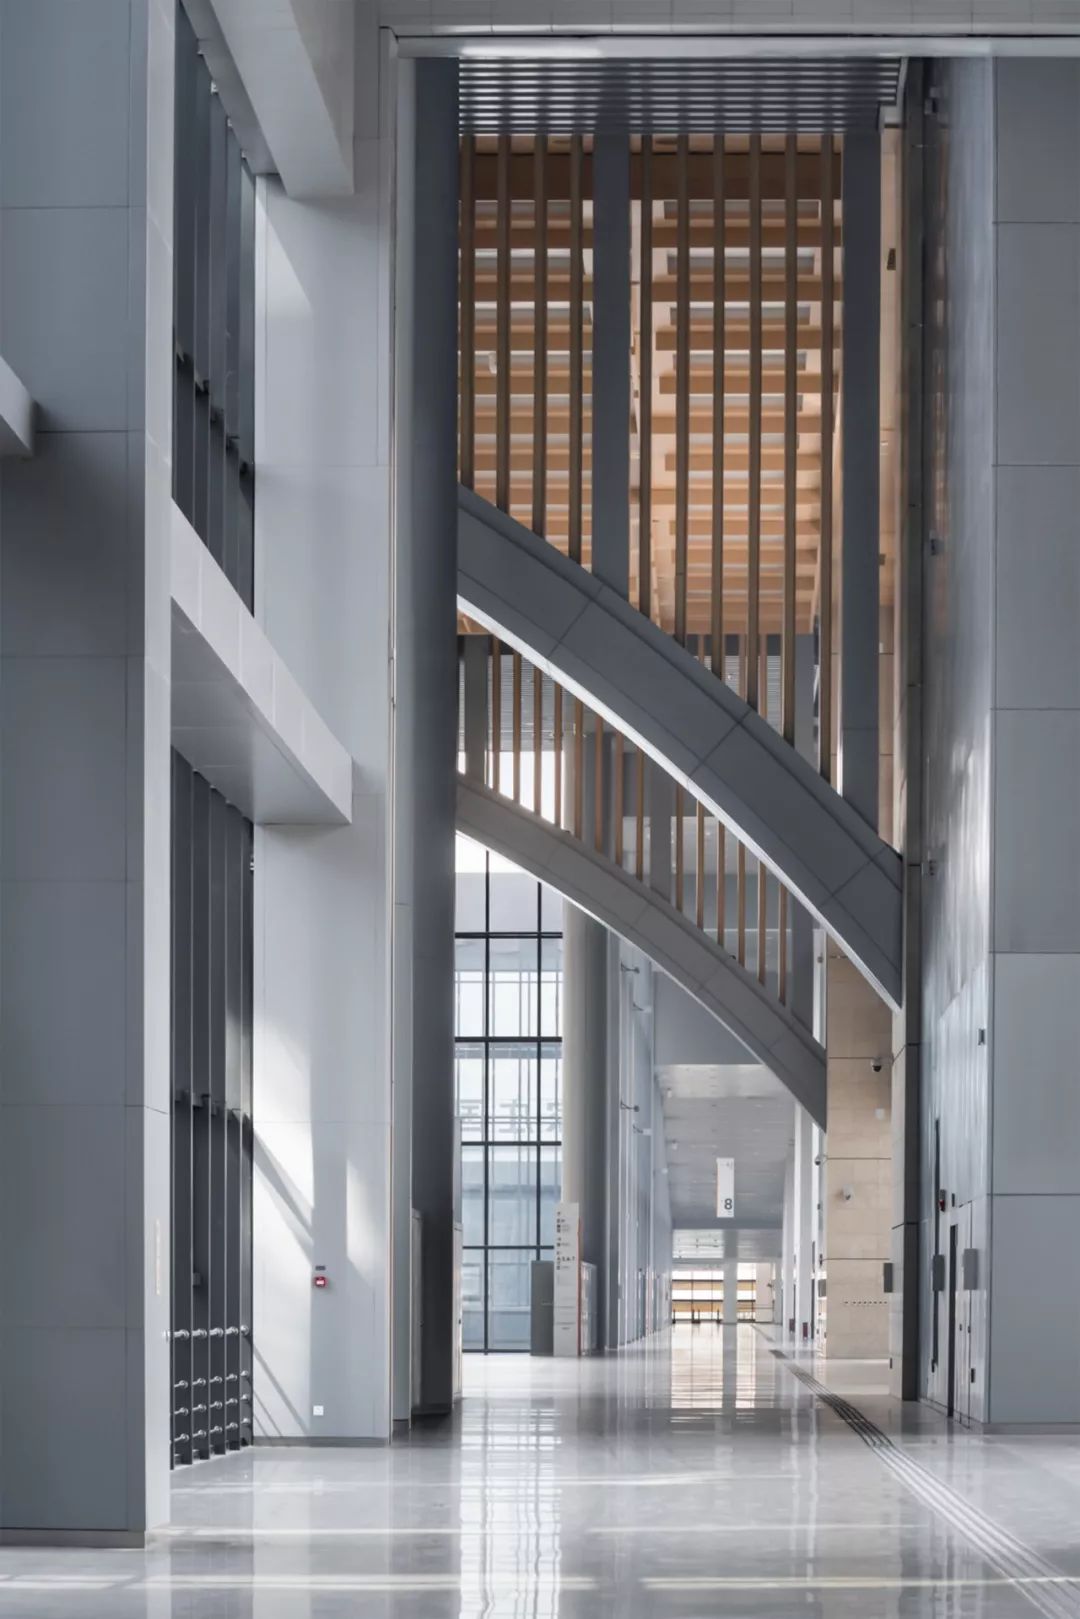 石家庄国际会展中心建筑设计/清华建筑设计研究院